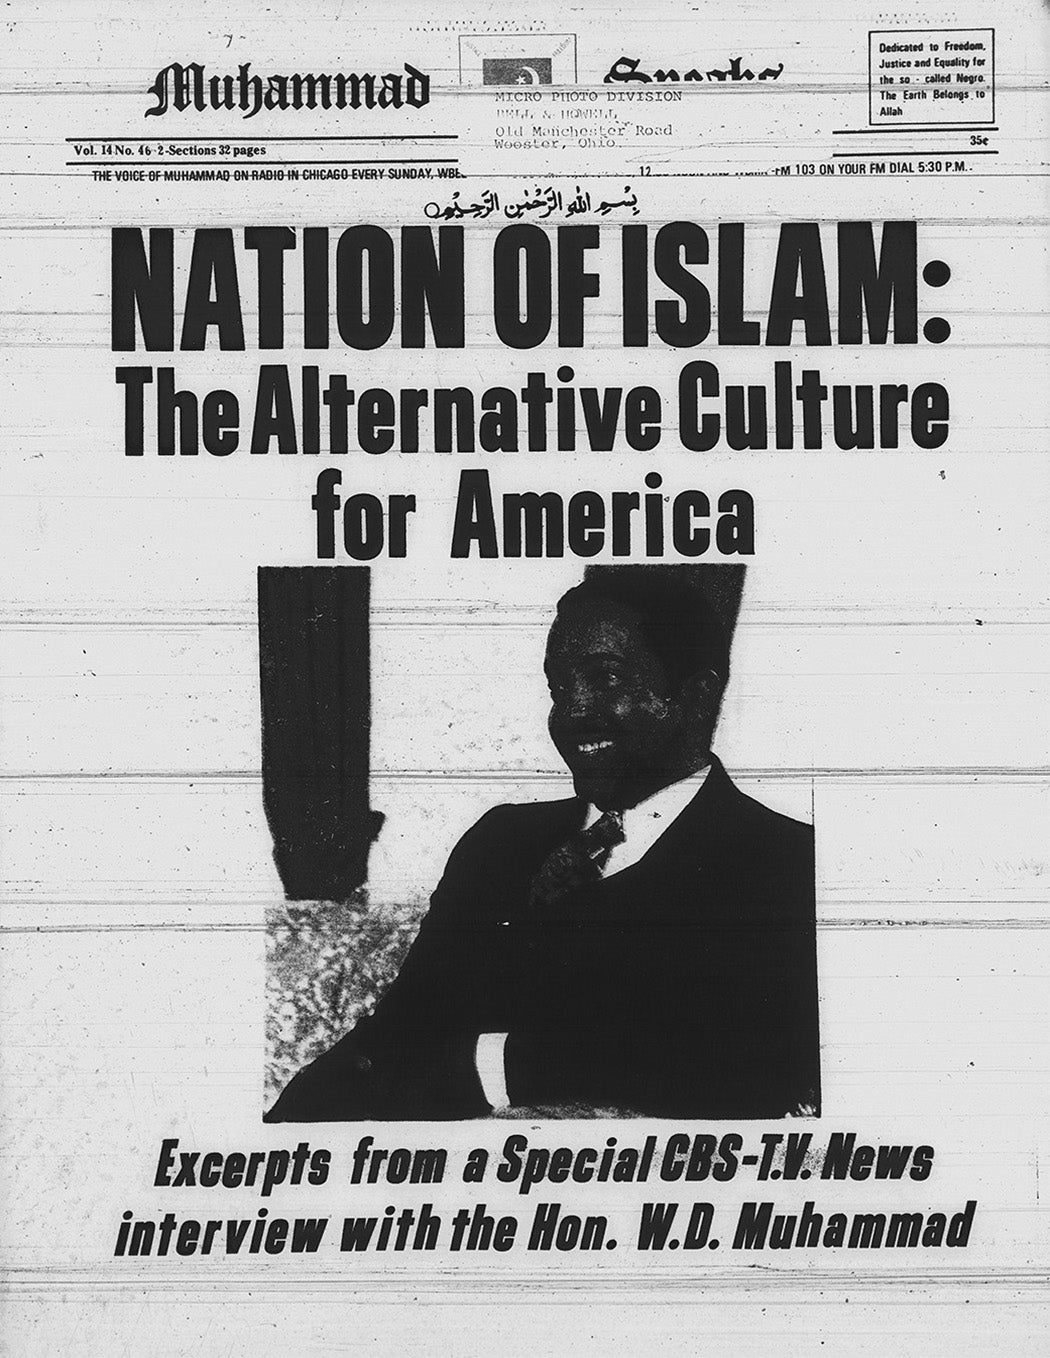 The cover of Mohammed Speaks, Volume 14, Issue 46, 07-25-1975